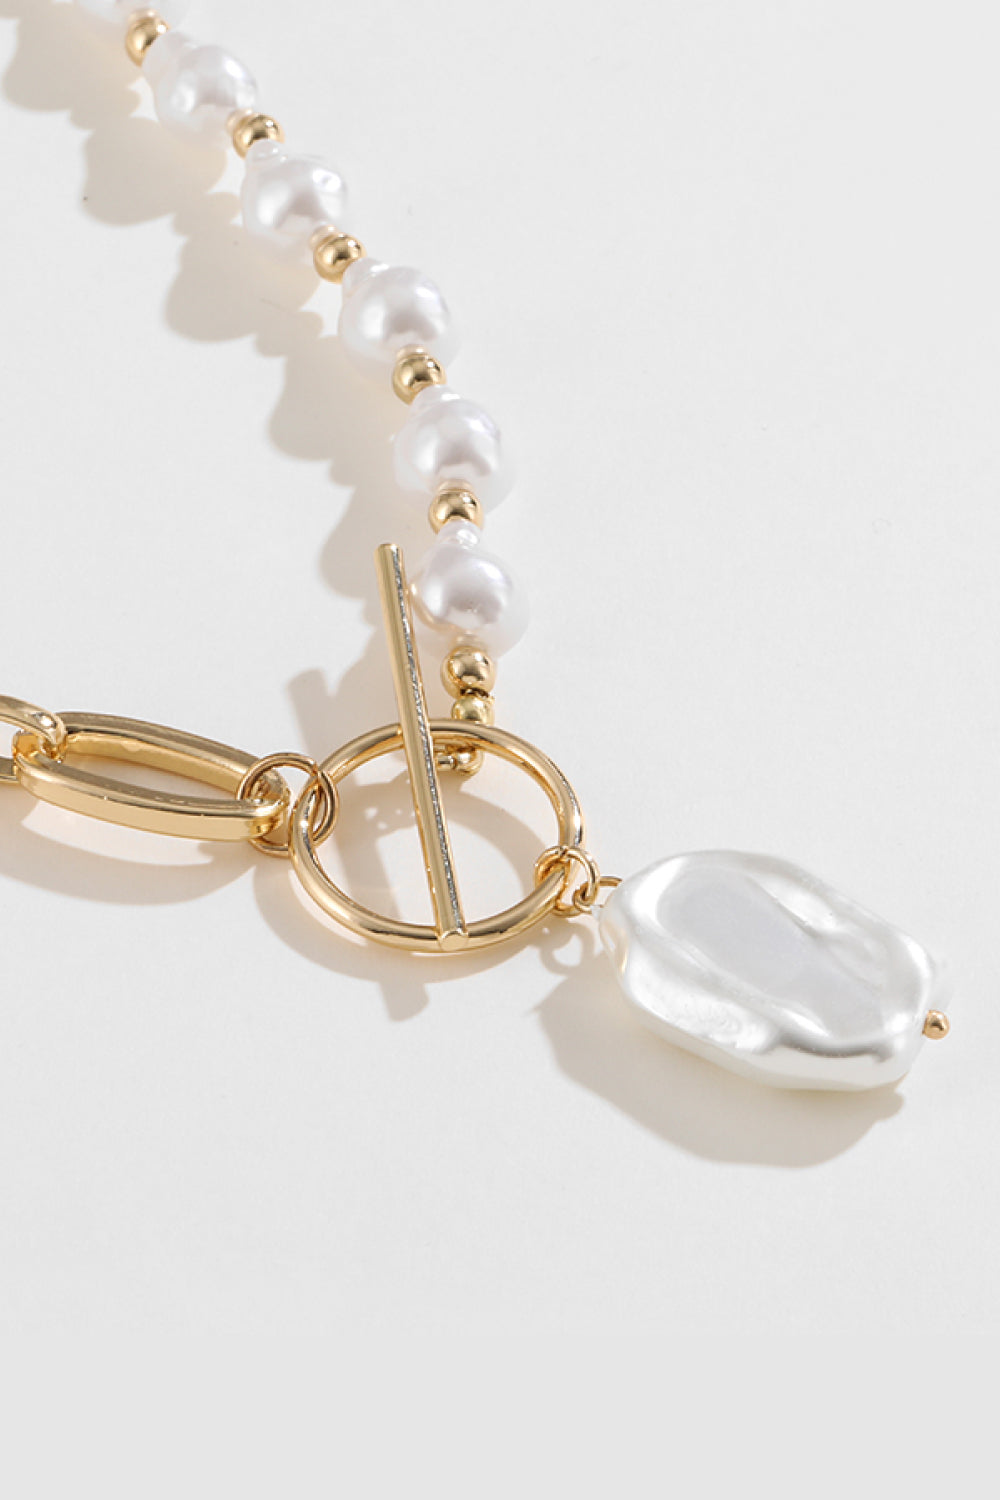 Women's Half Pearl Half Chain Toggle Clasp Necklace